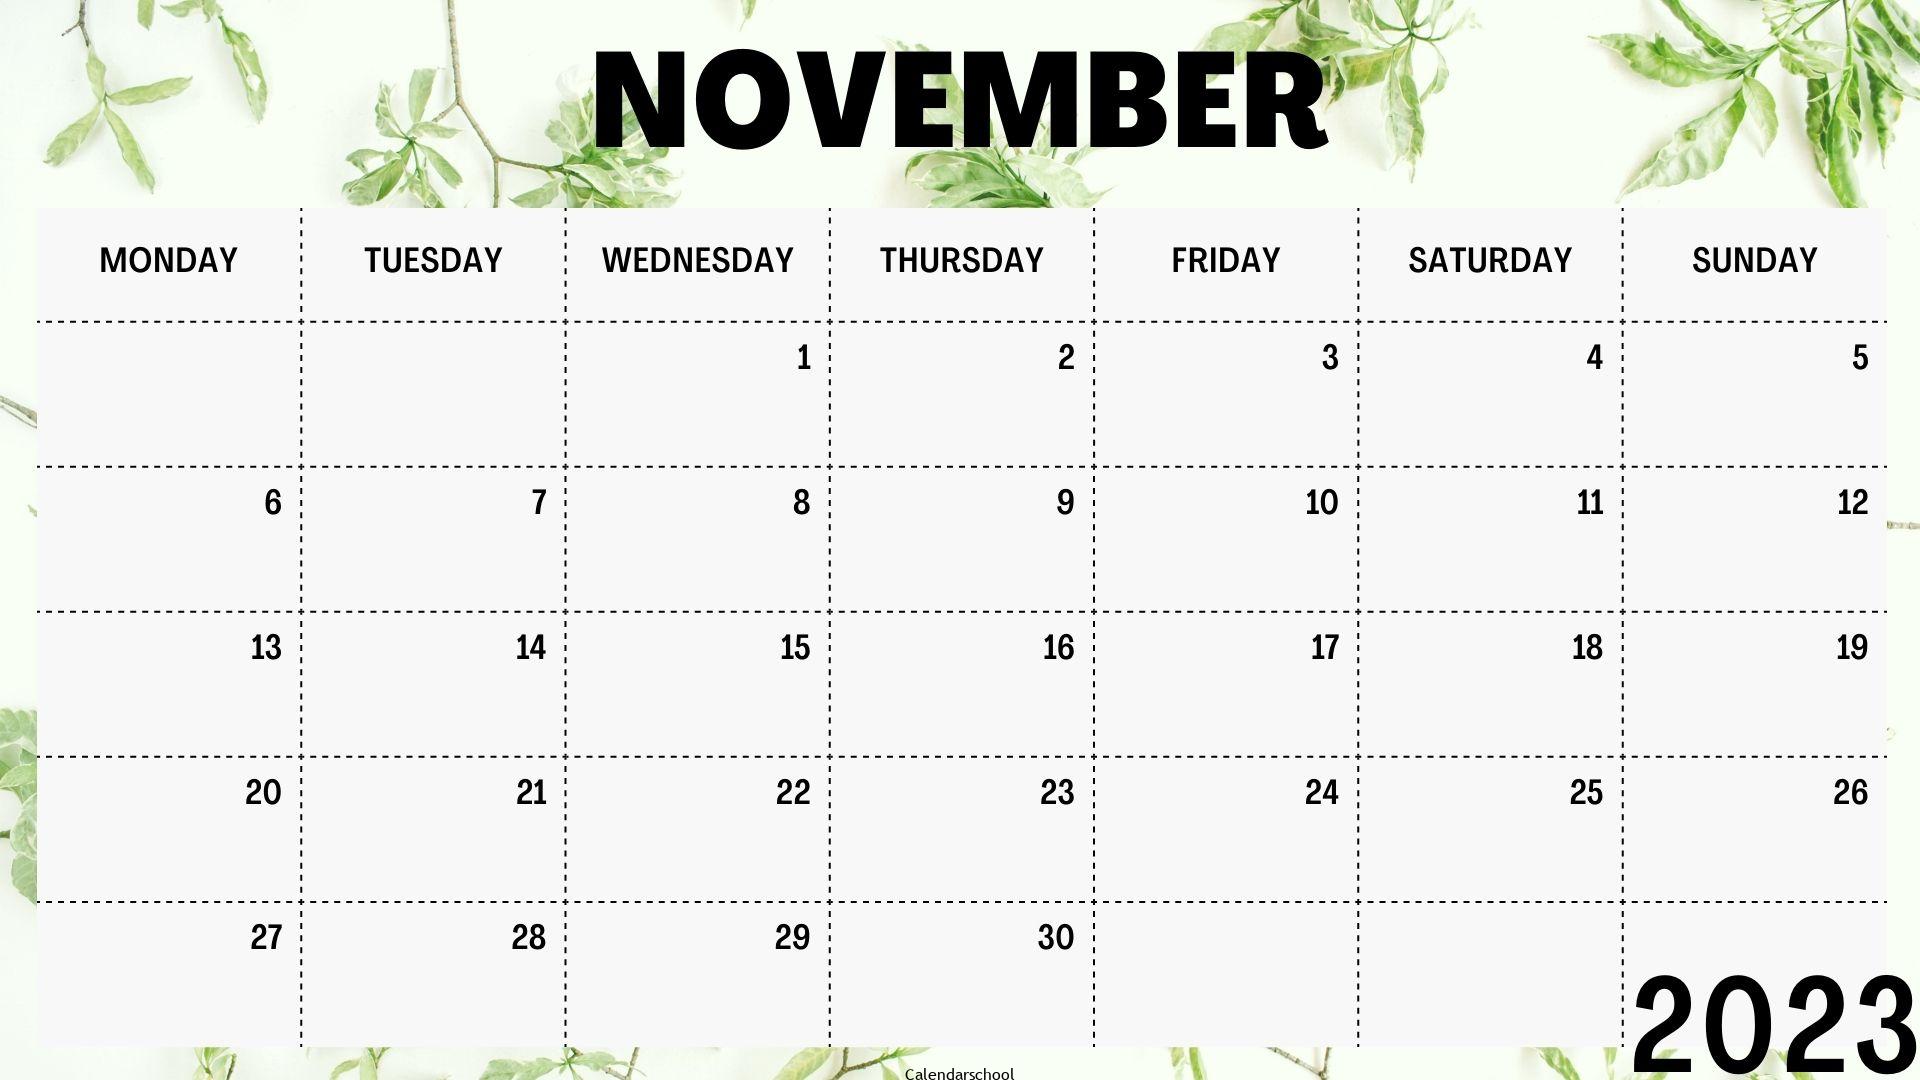 November 2023 Calendar With Festivals